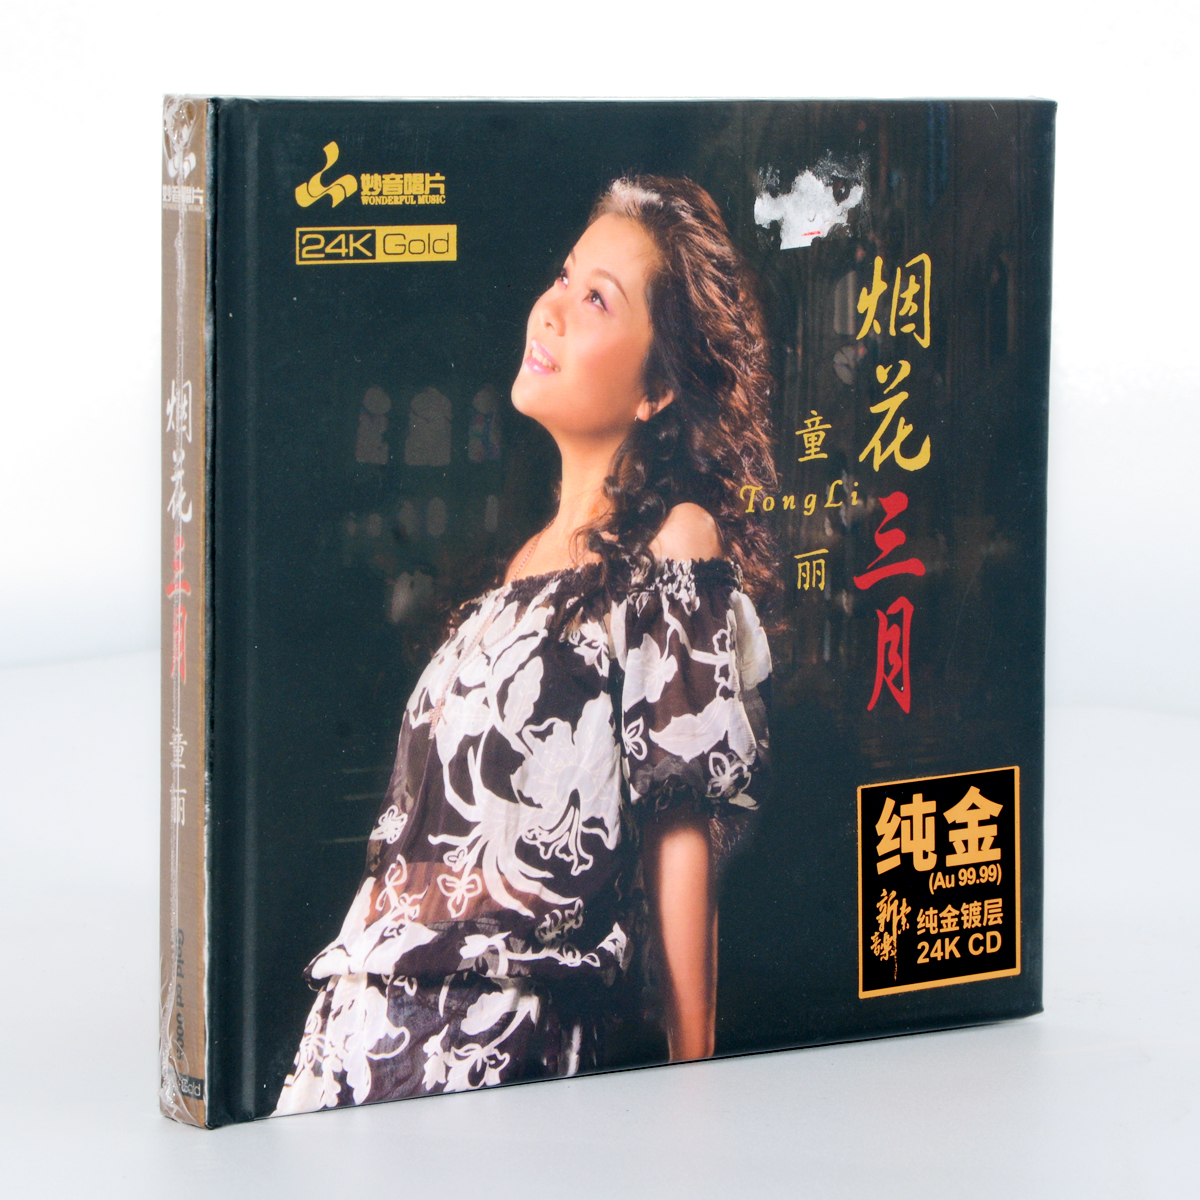 正版专辑童丽烟花三月 24K金碟高品质发烧CD光盘十大发烧唱片奖